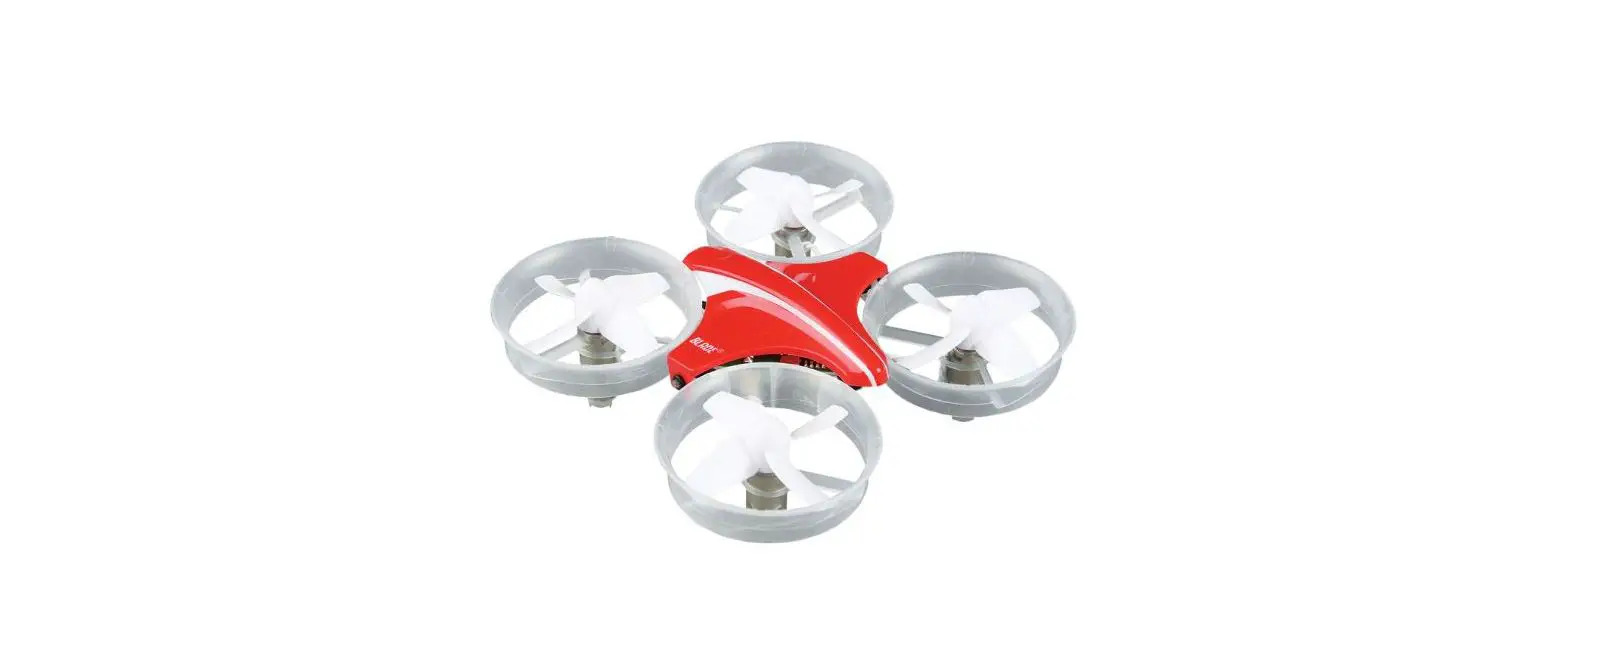 InDUCTRiX RTF Ultra Micro Electric Quad-Copter Drone